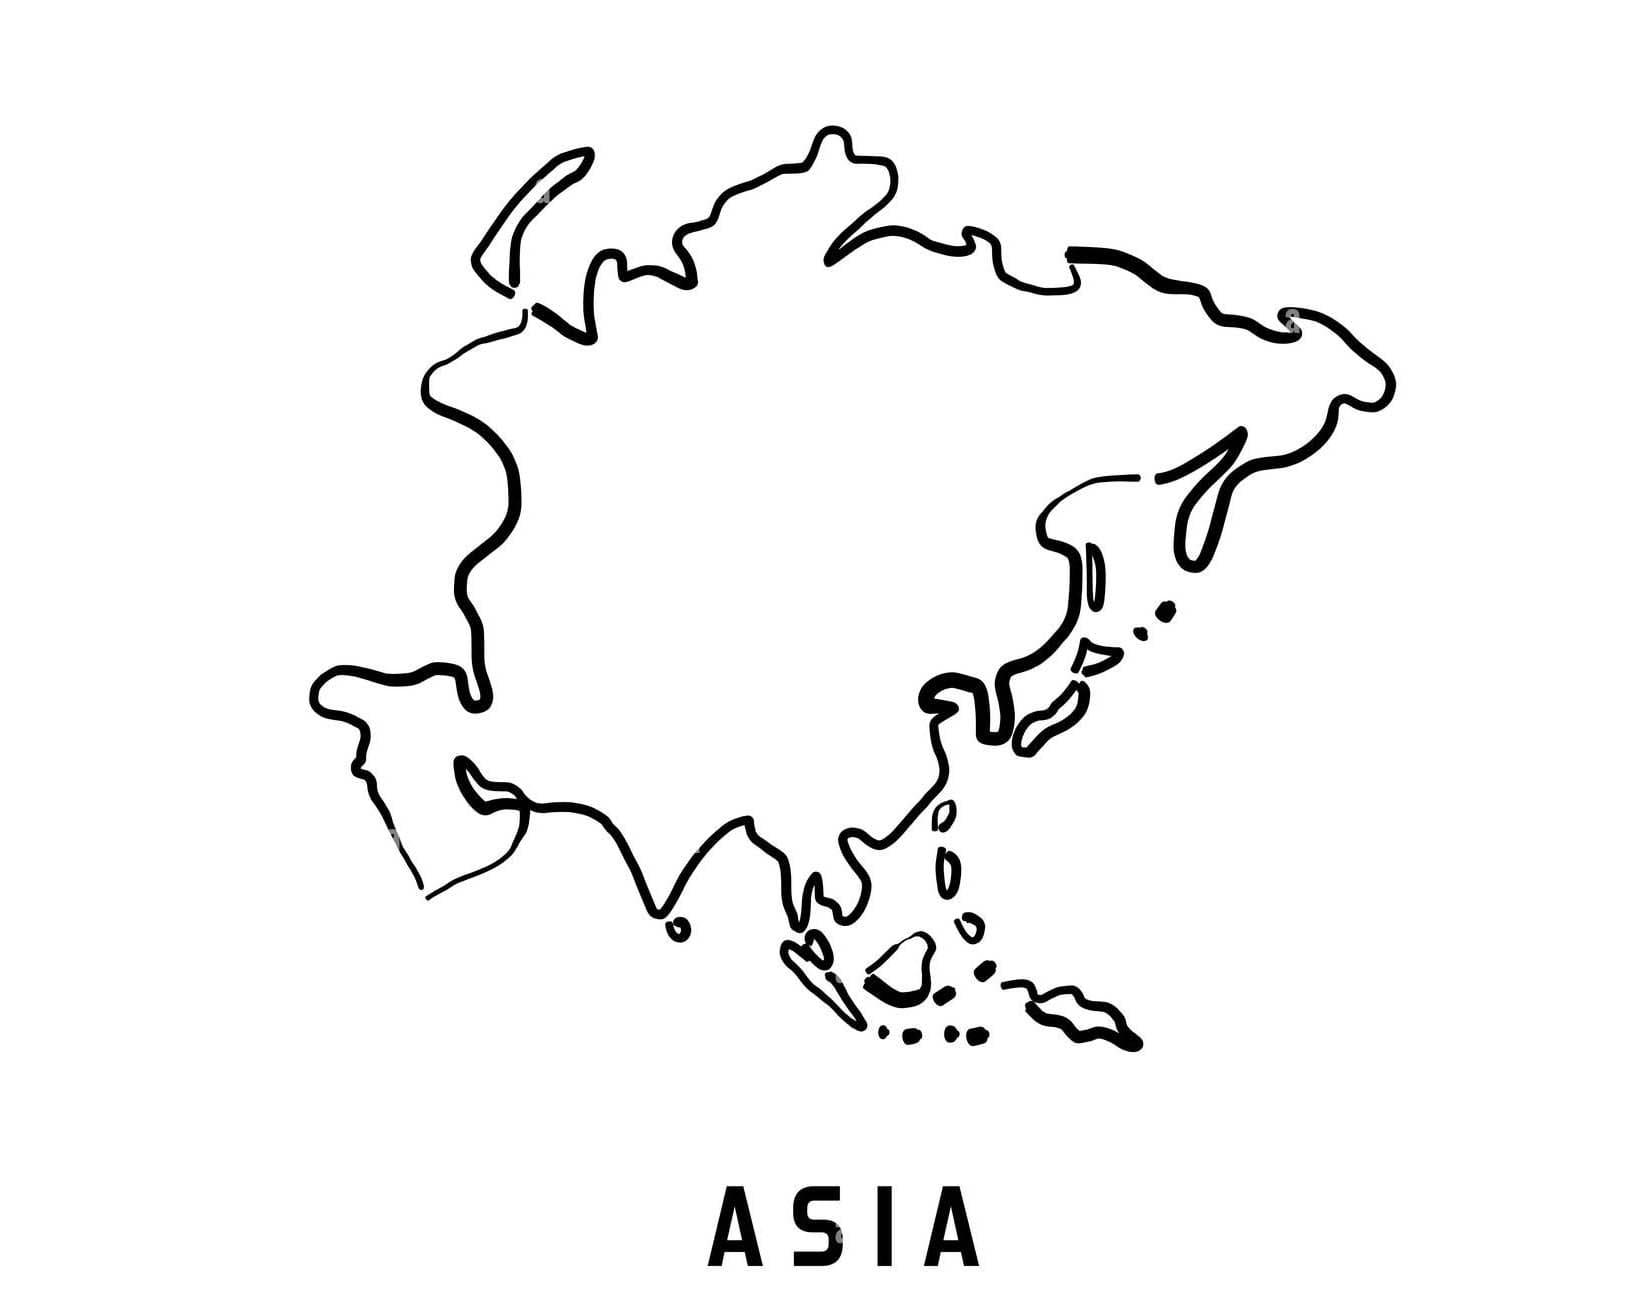 빈 아시아 지도 외곽선